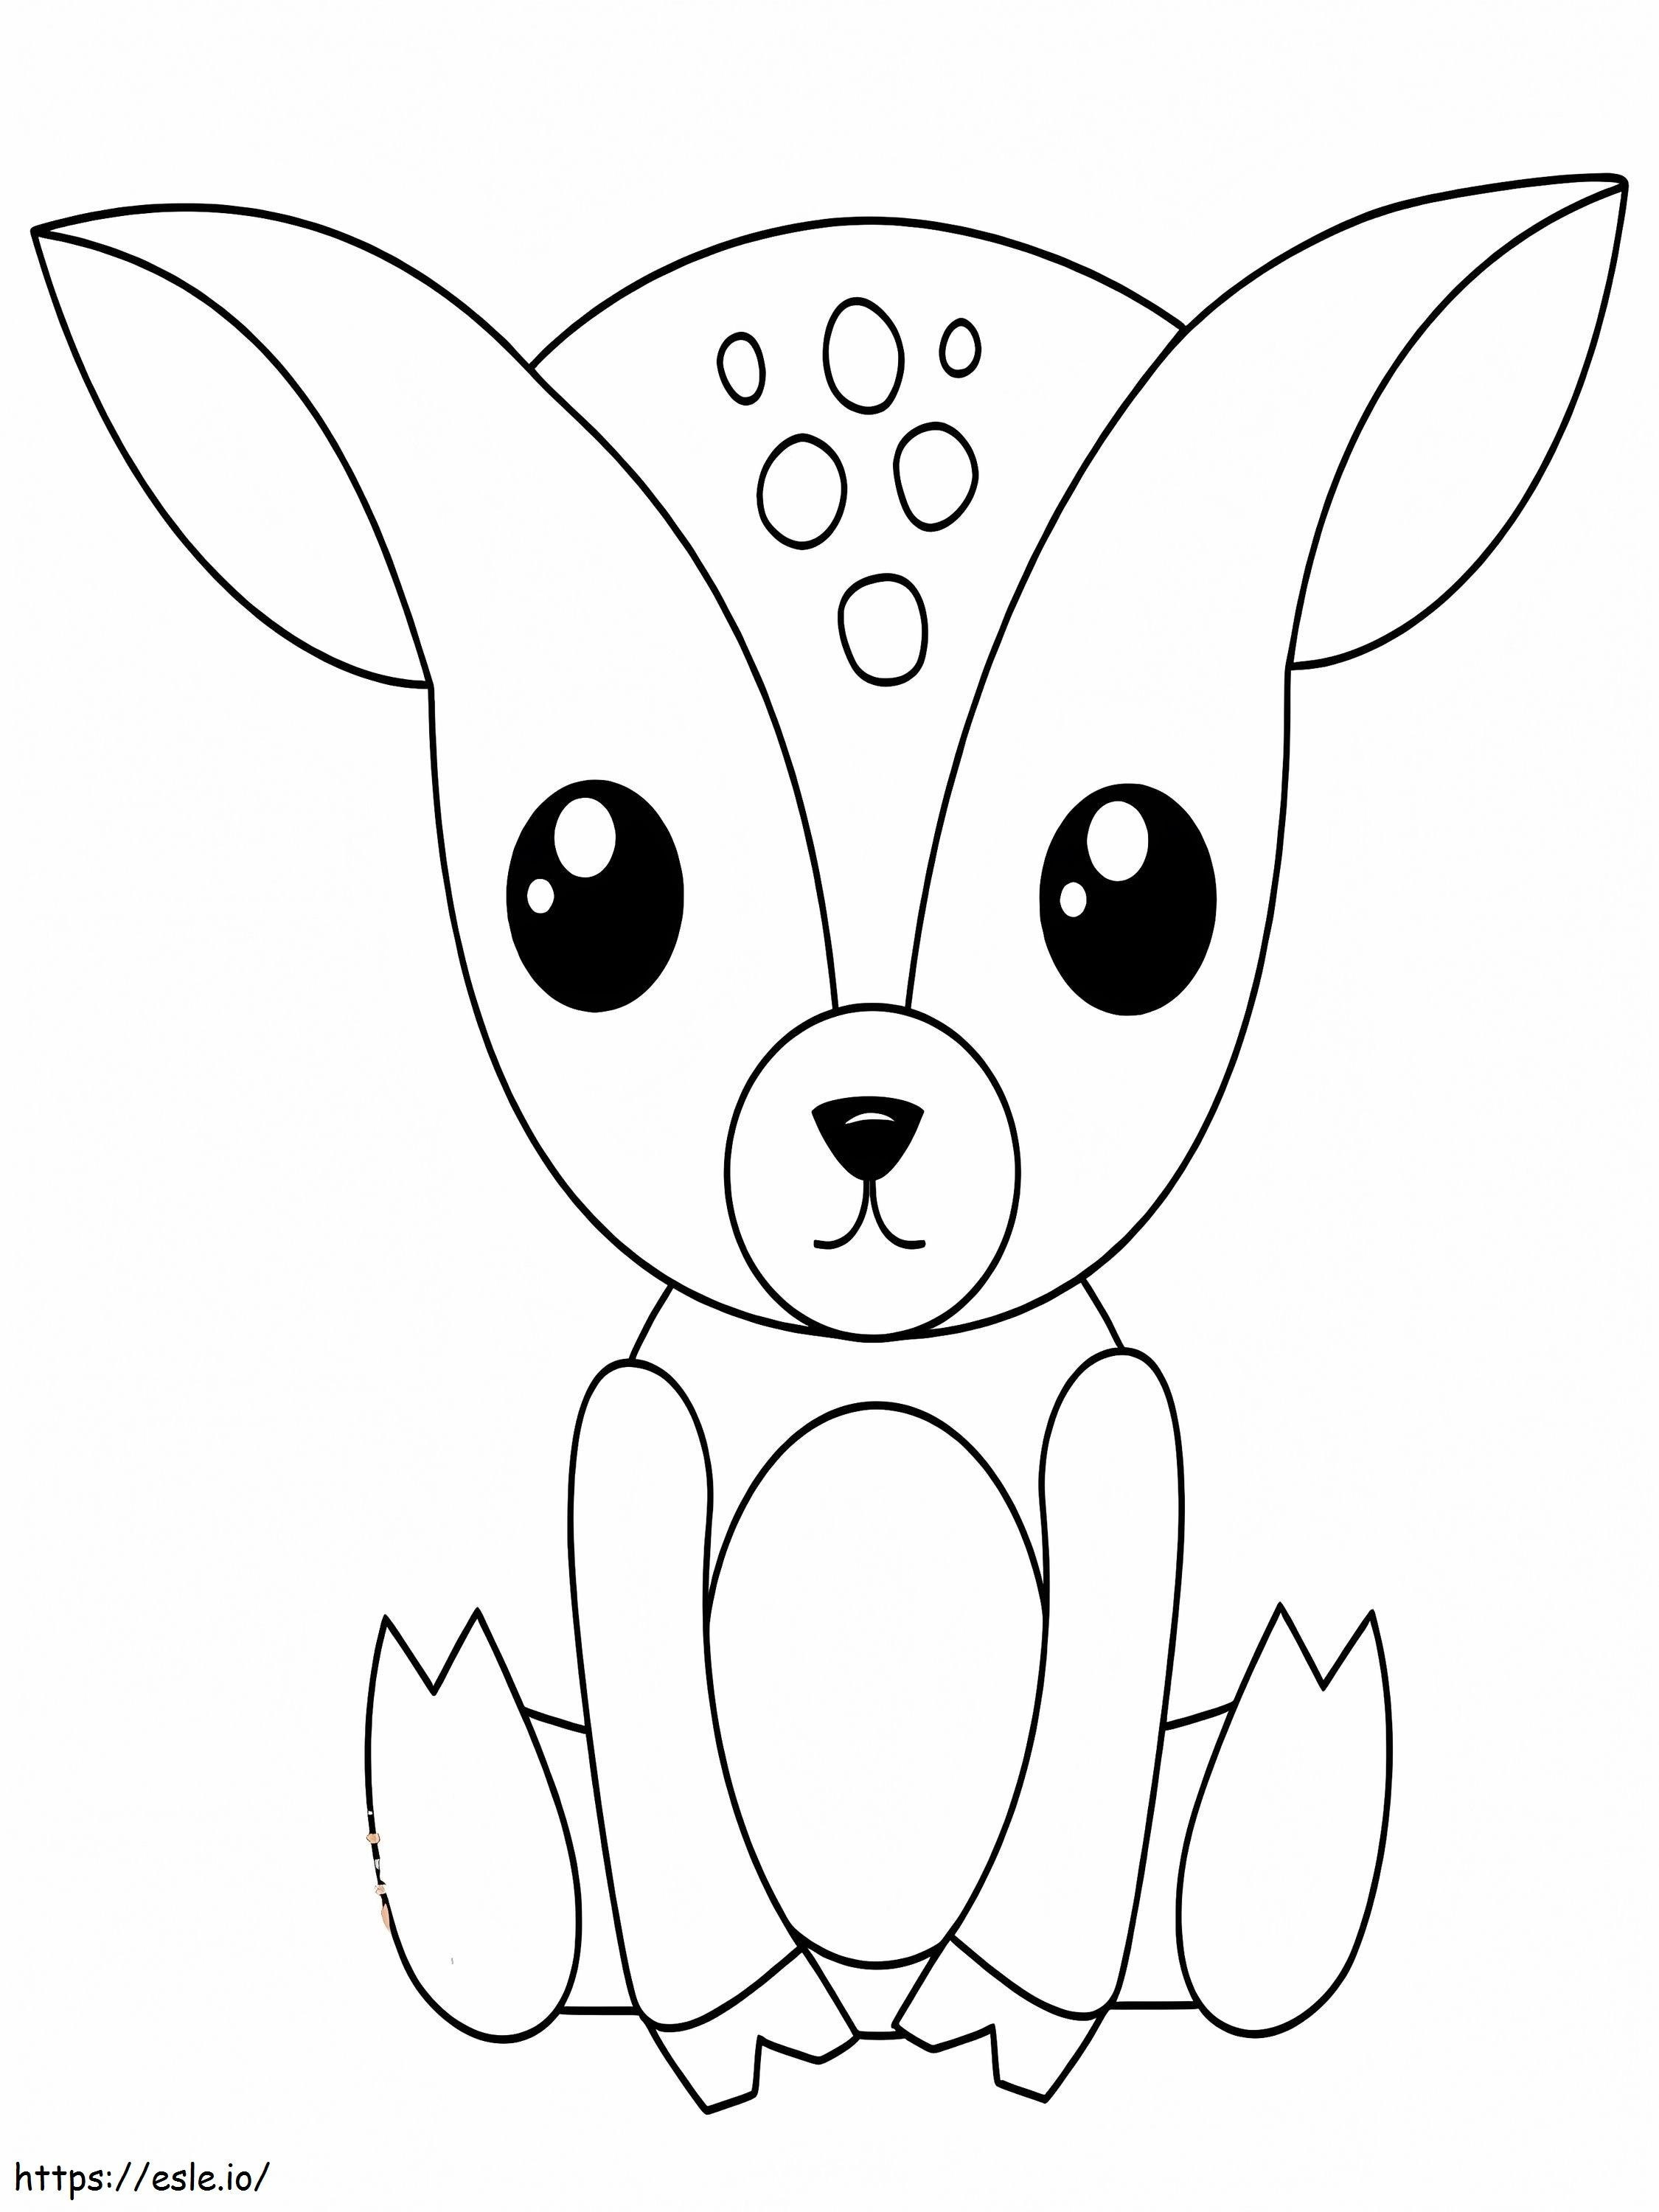 Coloriage Bébé cerf assis à imprimer dessin